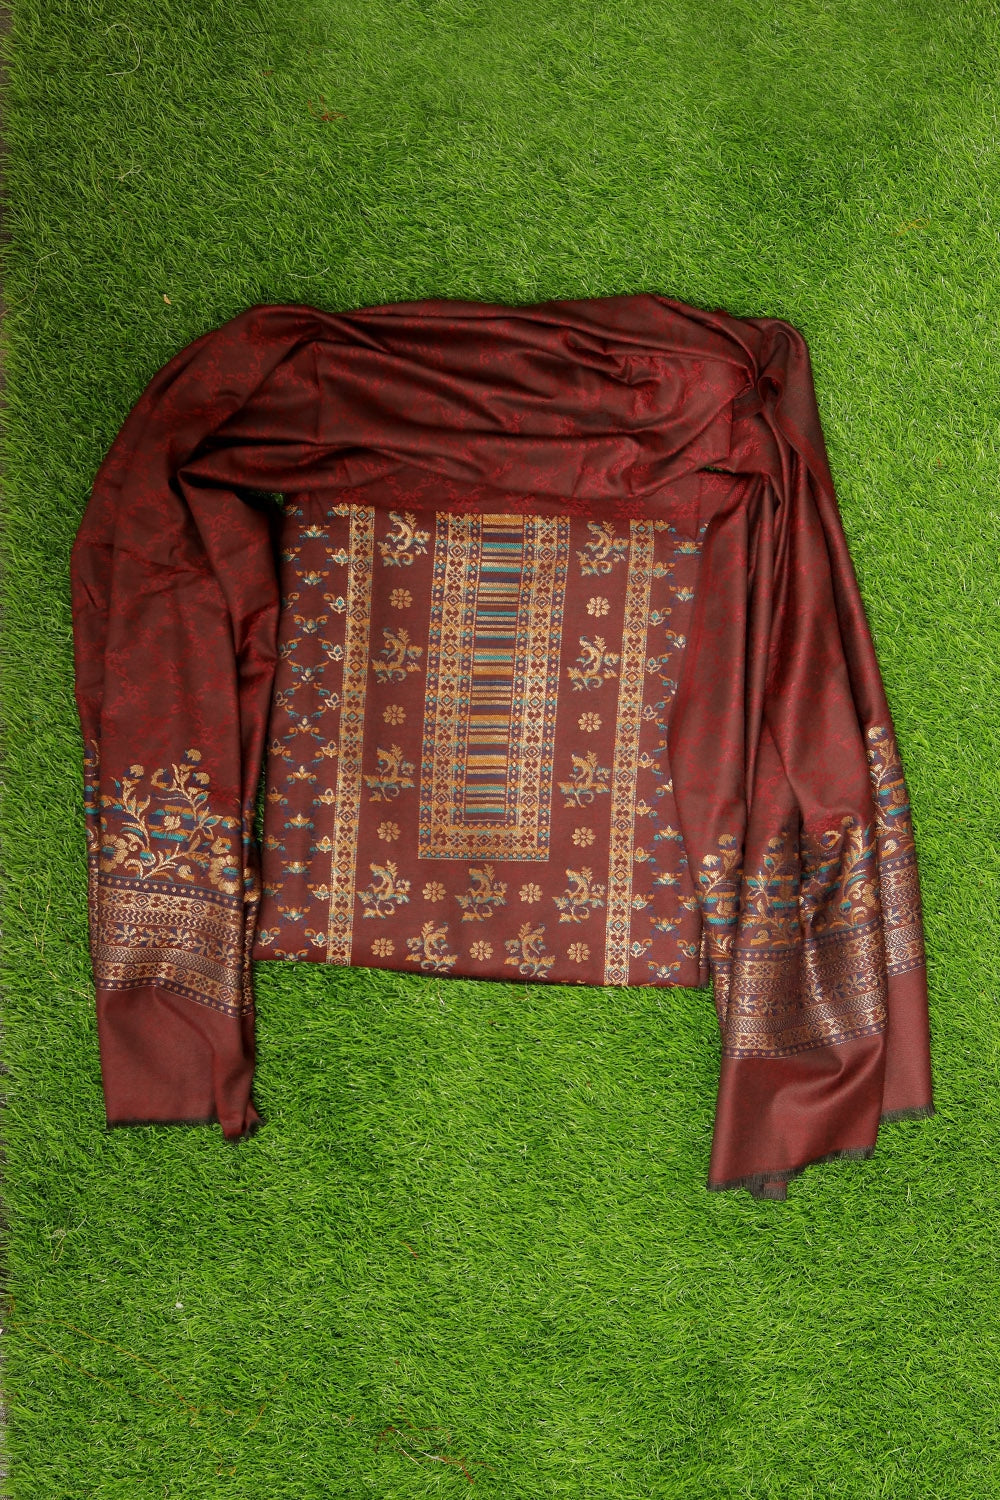 Darken Maroon (burgundy) Colour Cotton Zari Kani Stole Suit